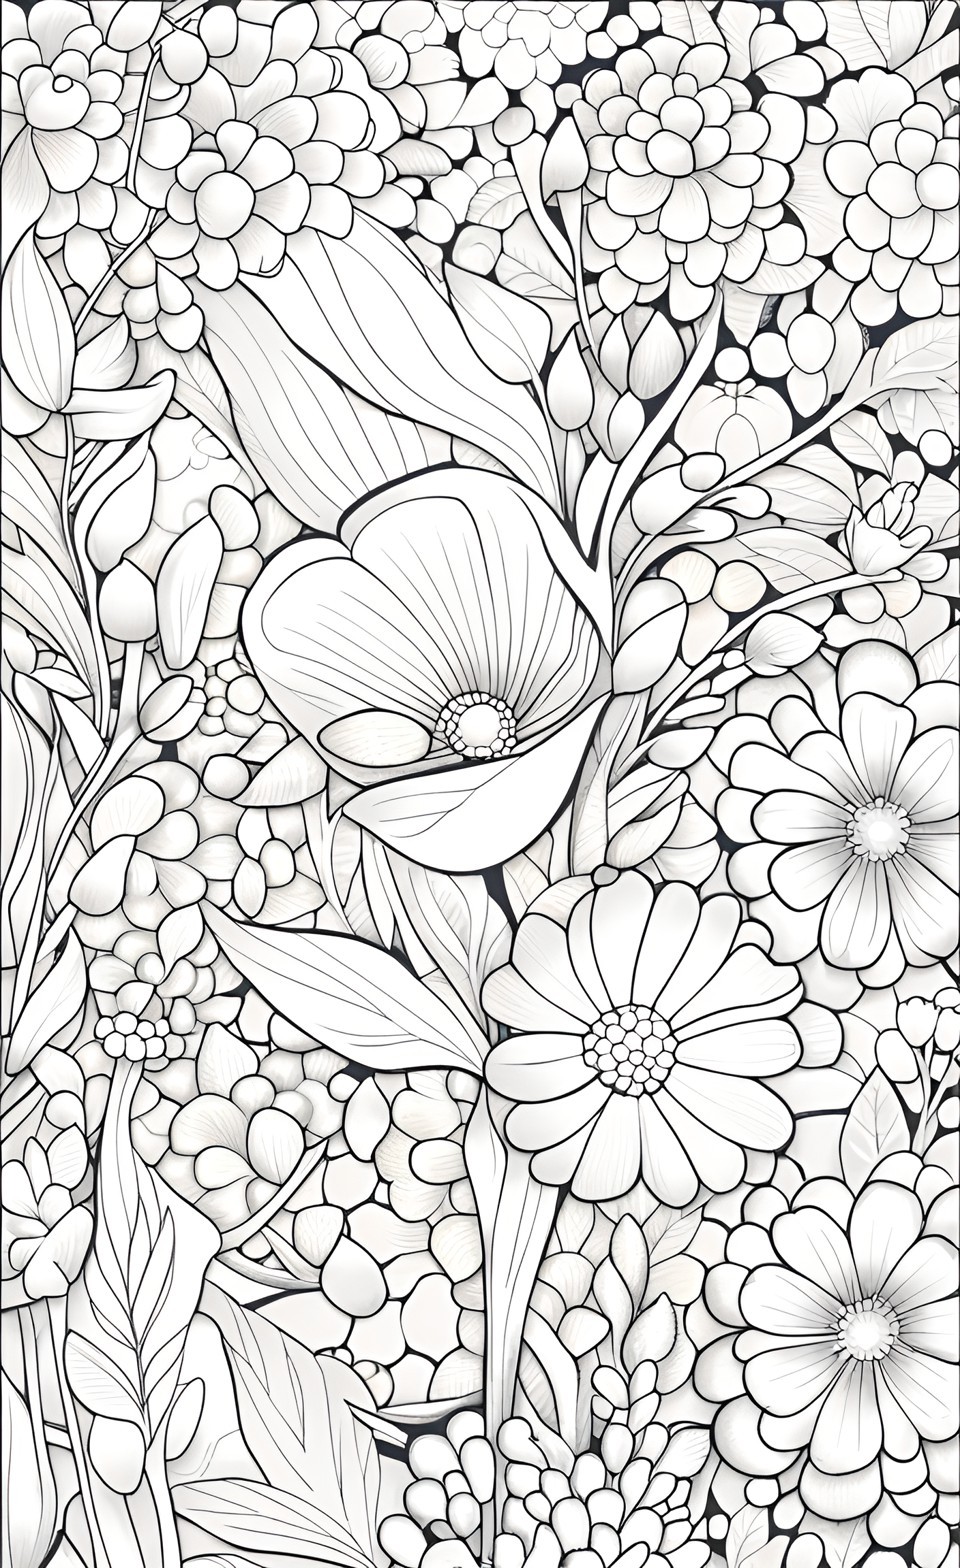 Ücretsiz Çiçek Boyama Sayfaları | Free Flower Coloring Pages